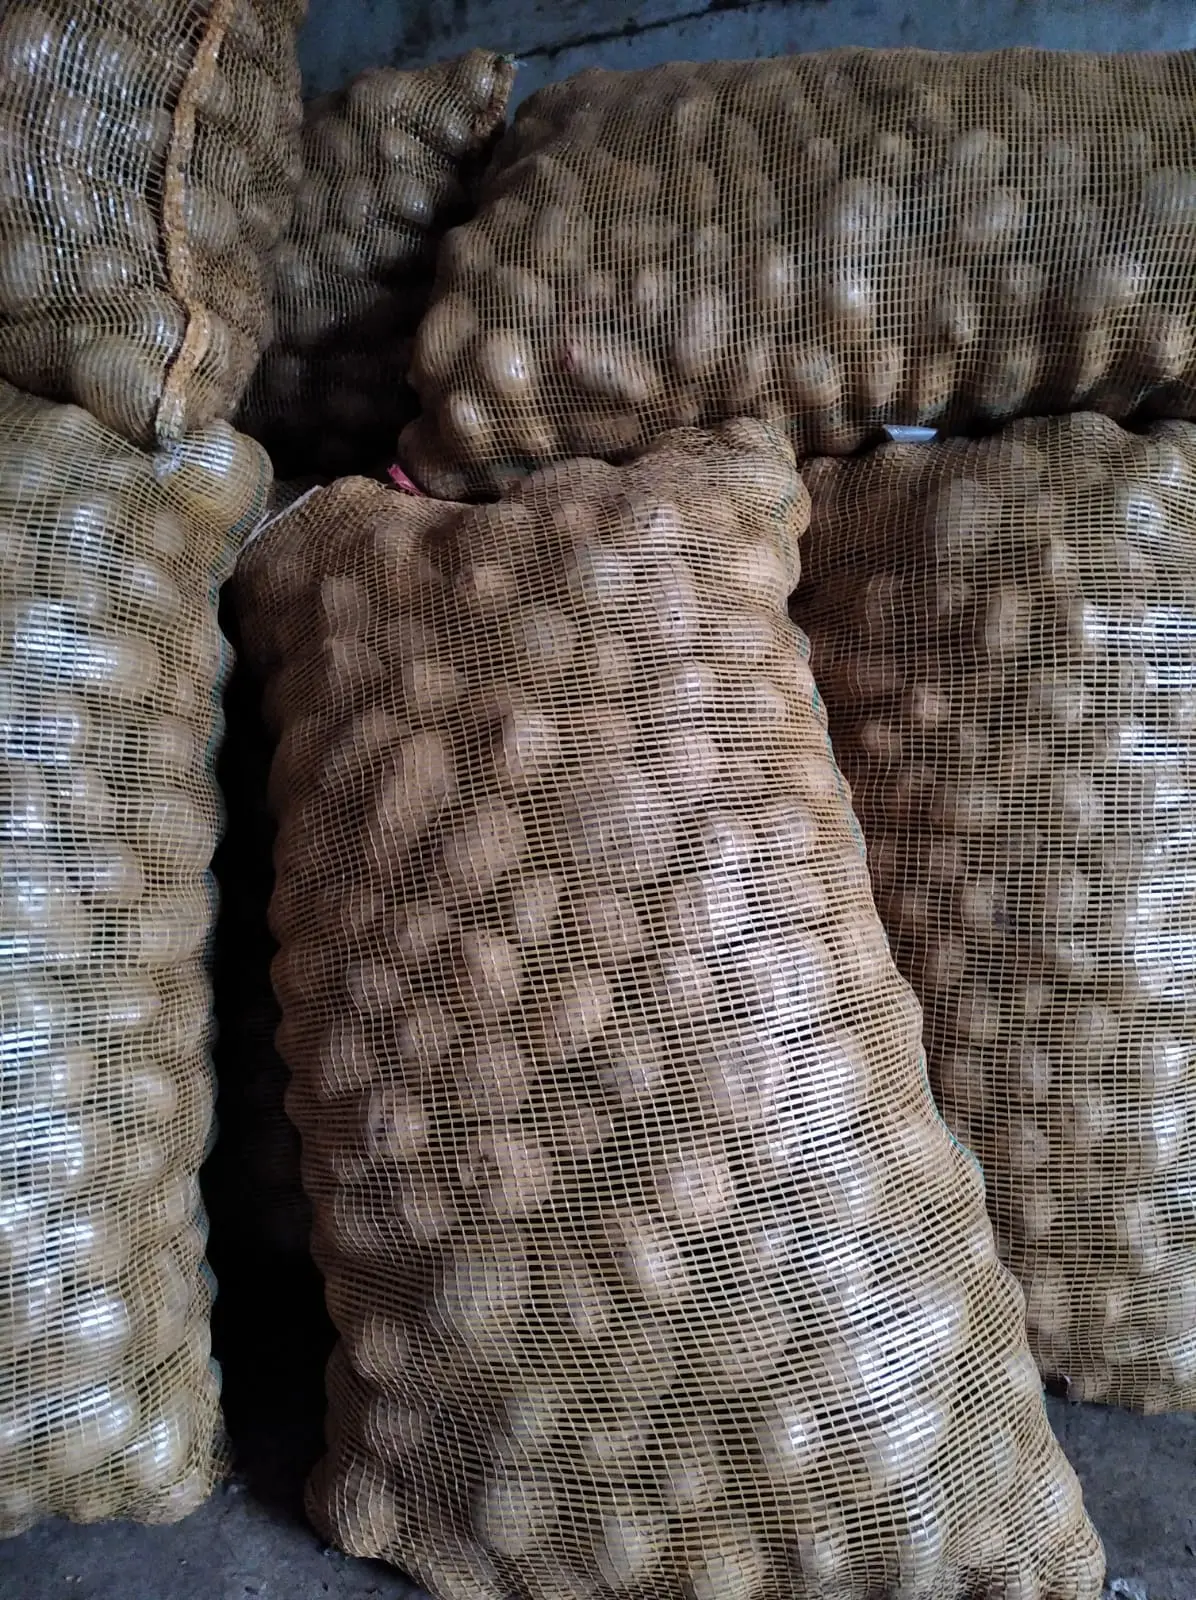 Harga kentang murah terbaik di Tanah Garam